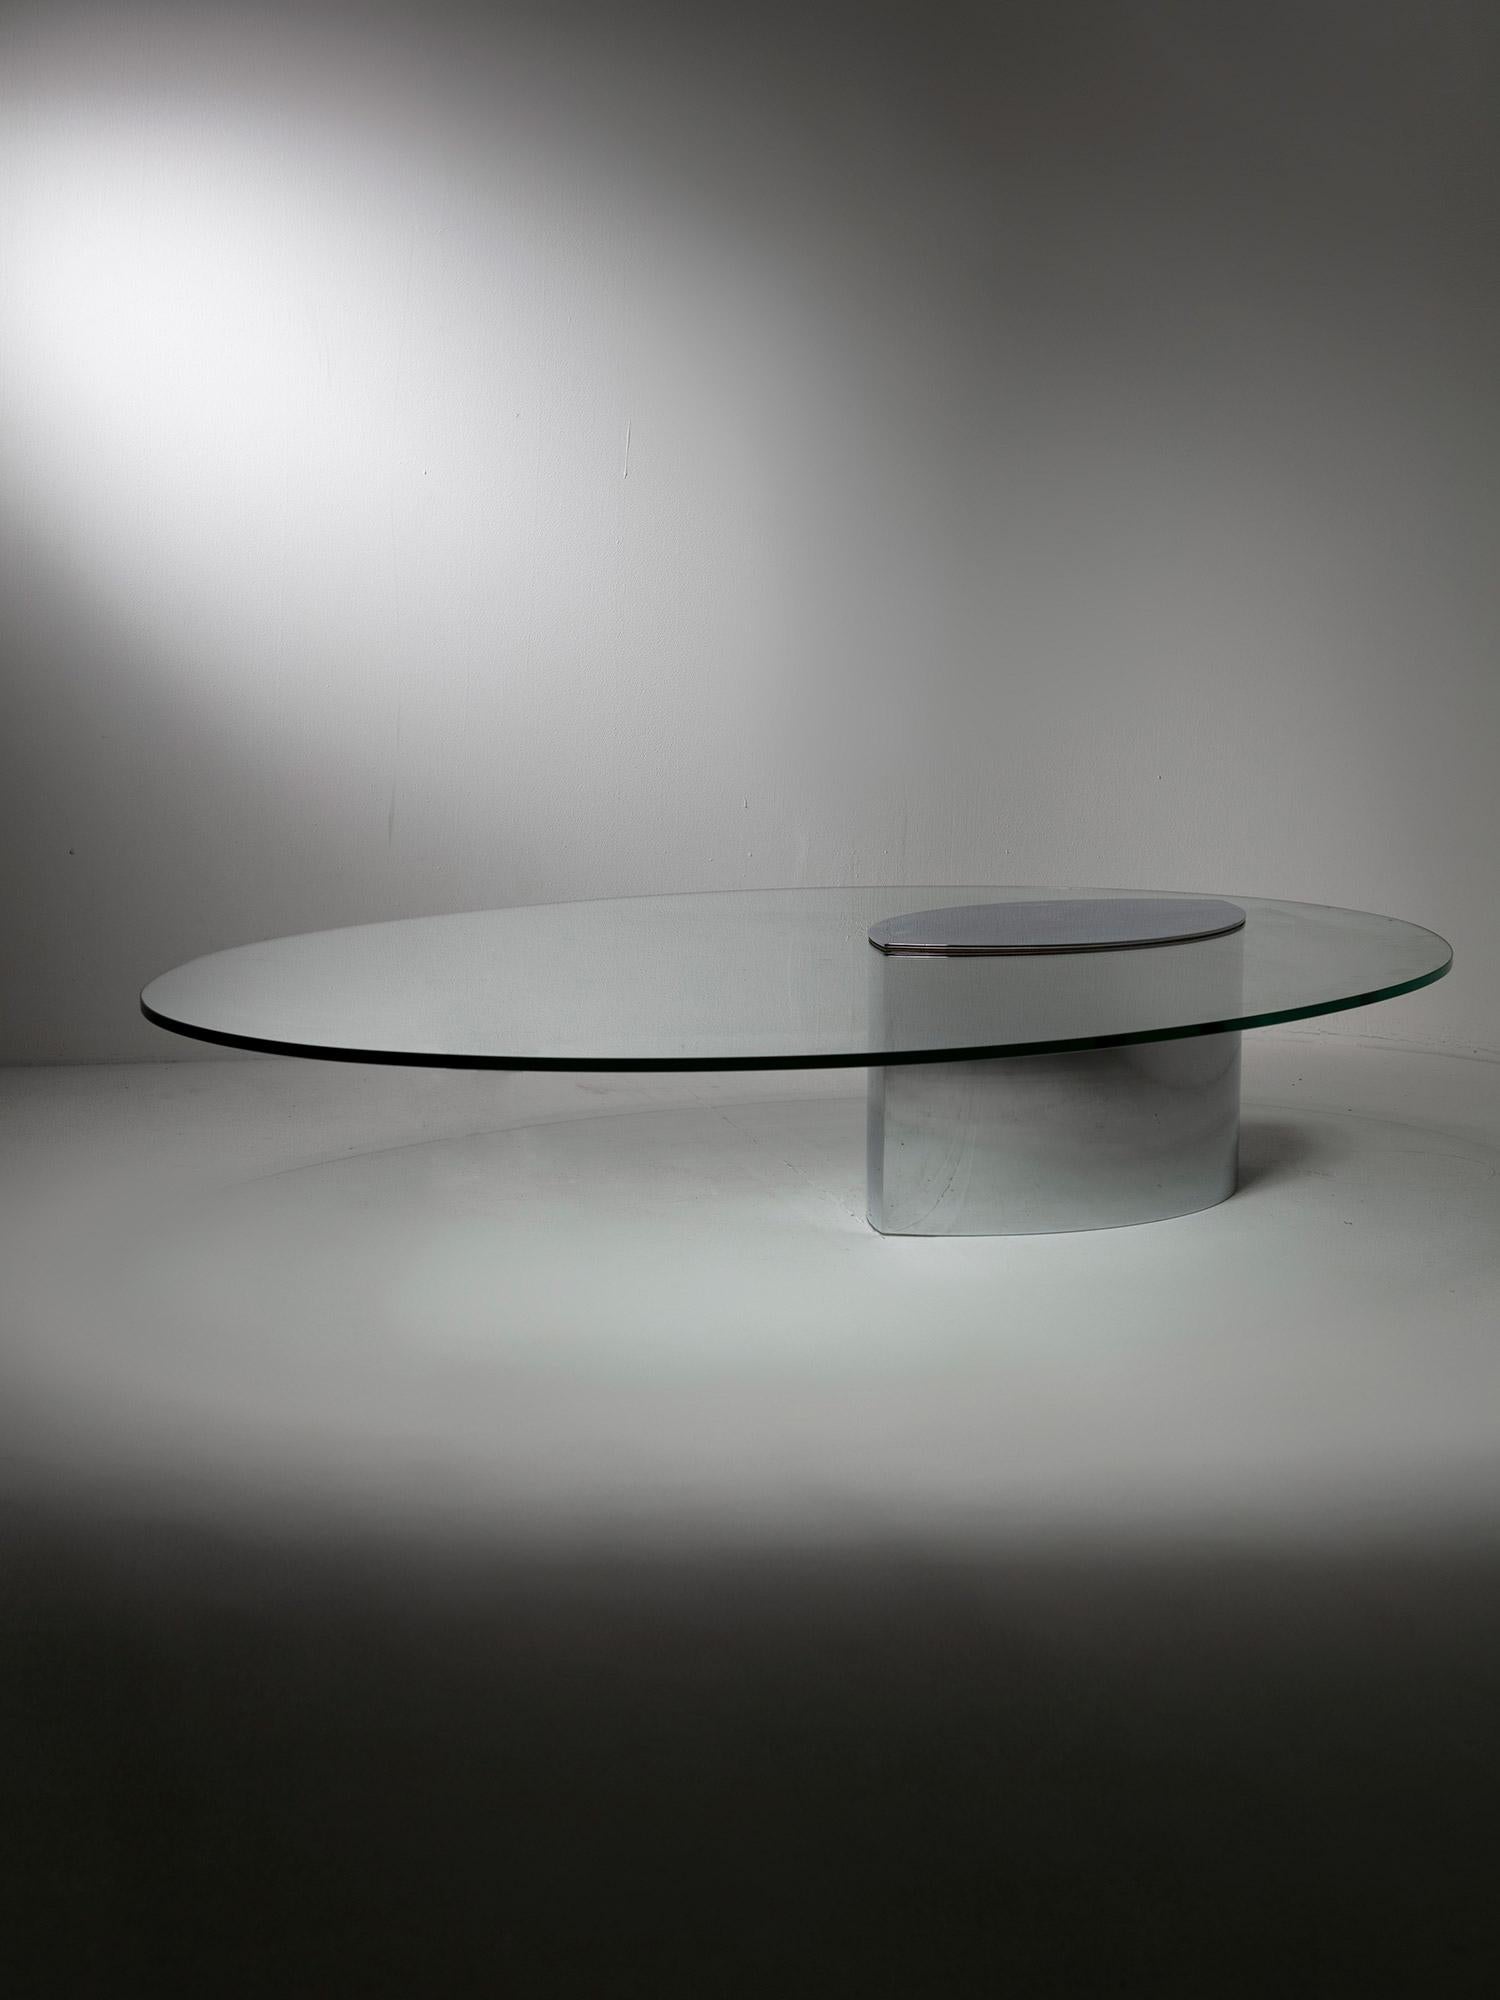 Der ikonische niedrige Tisch Lunario von Cini Boeri für Gavina.
Der Sockel aus poliertem, verchromtem Messing trägt eine große, ovale Glasfläche.
Eines der ersten Beispiele für Tische mit einer freitragenden Platte und einem schweren Gegengewicht